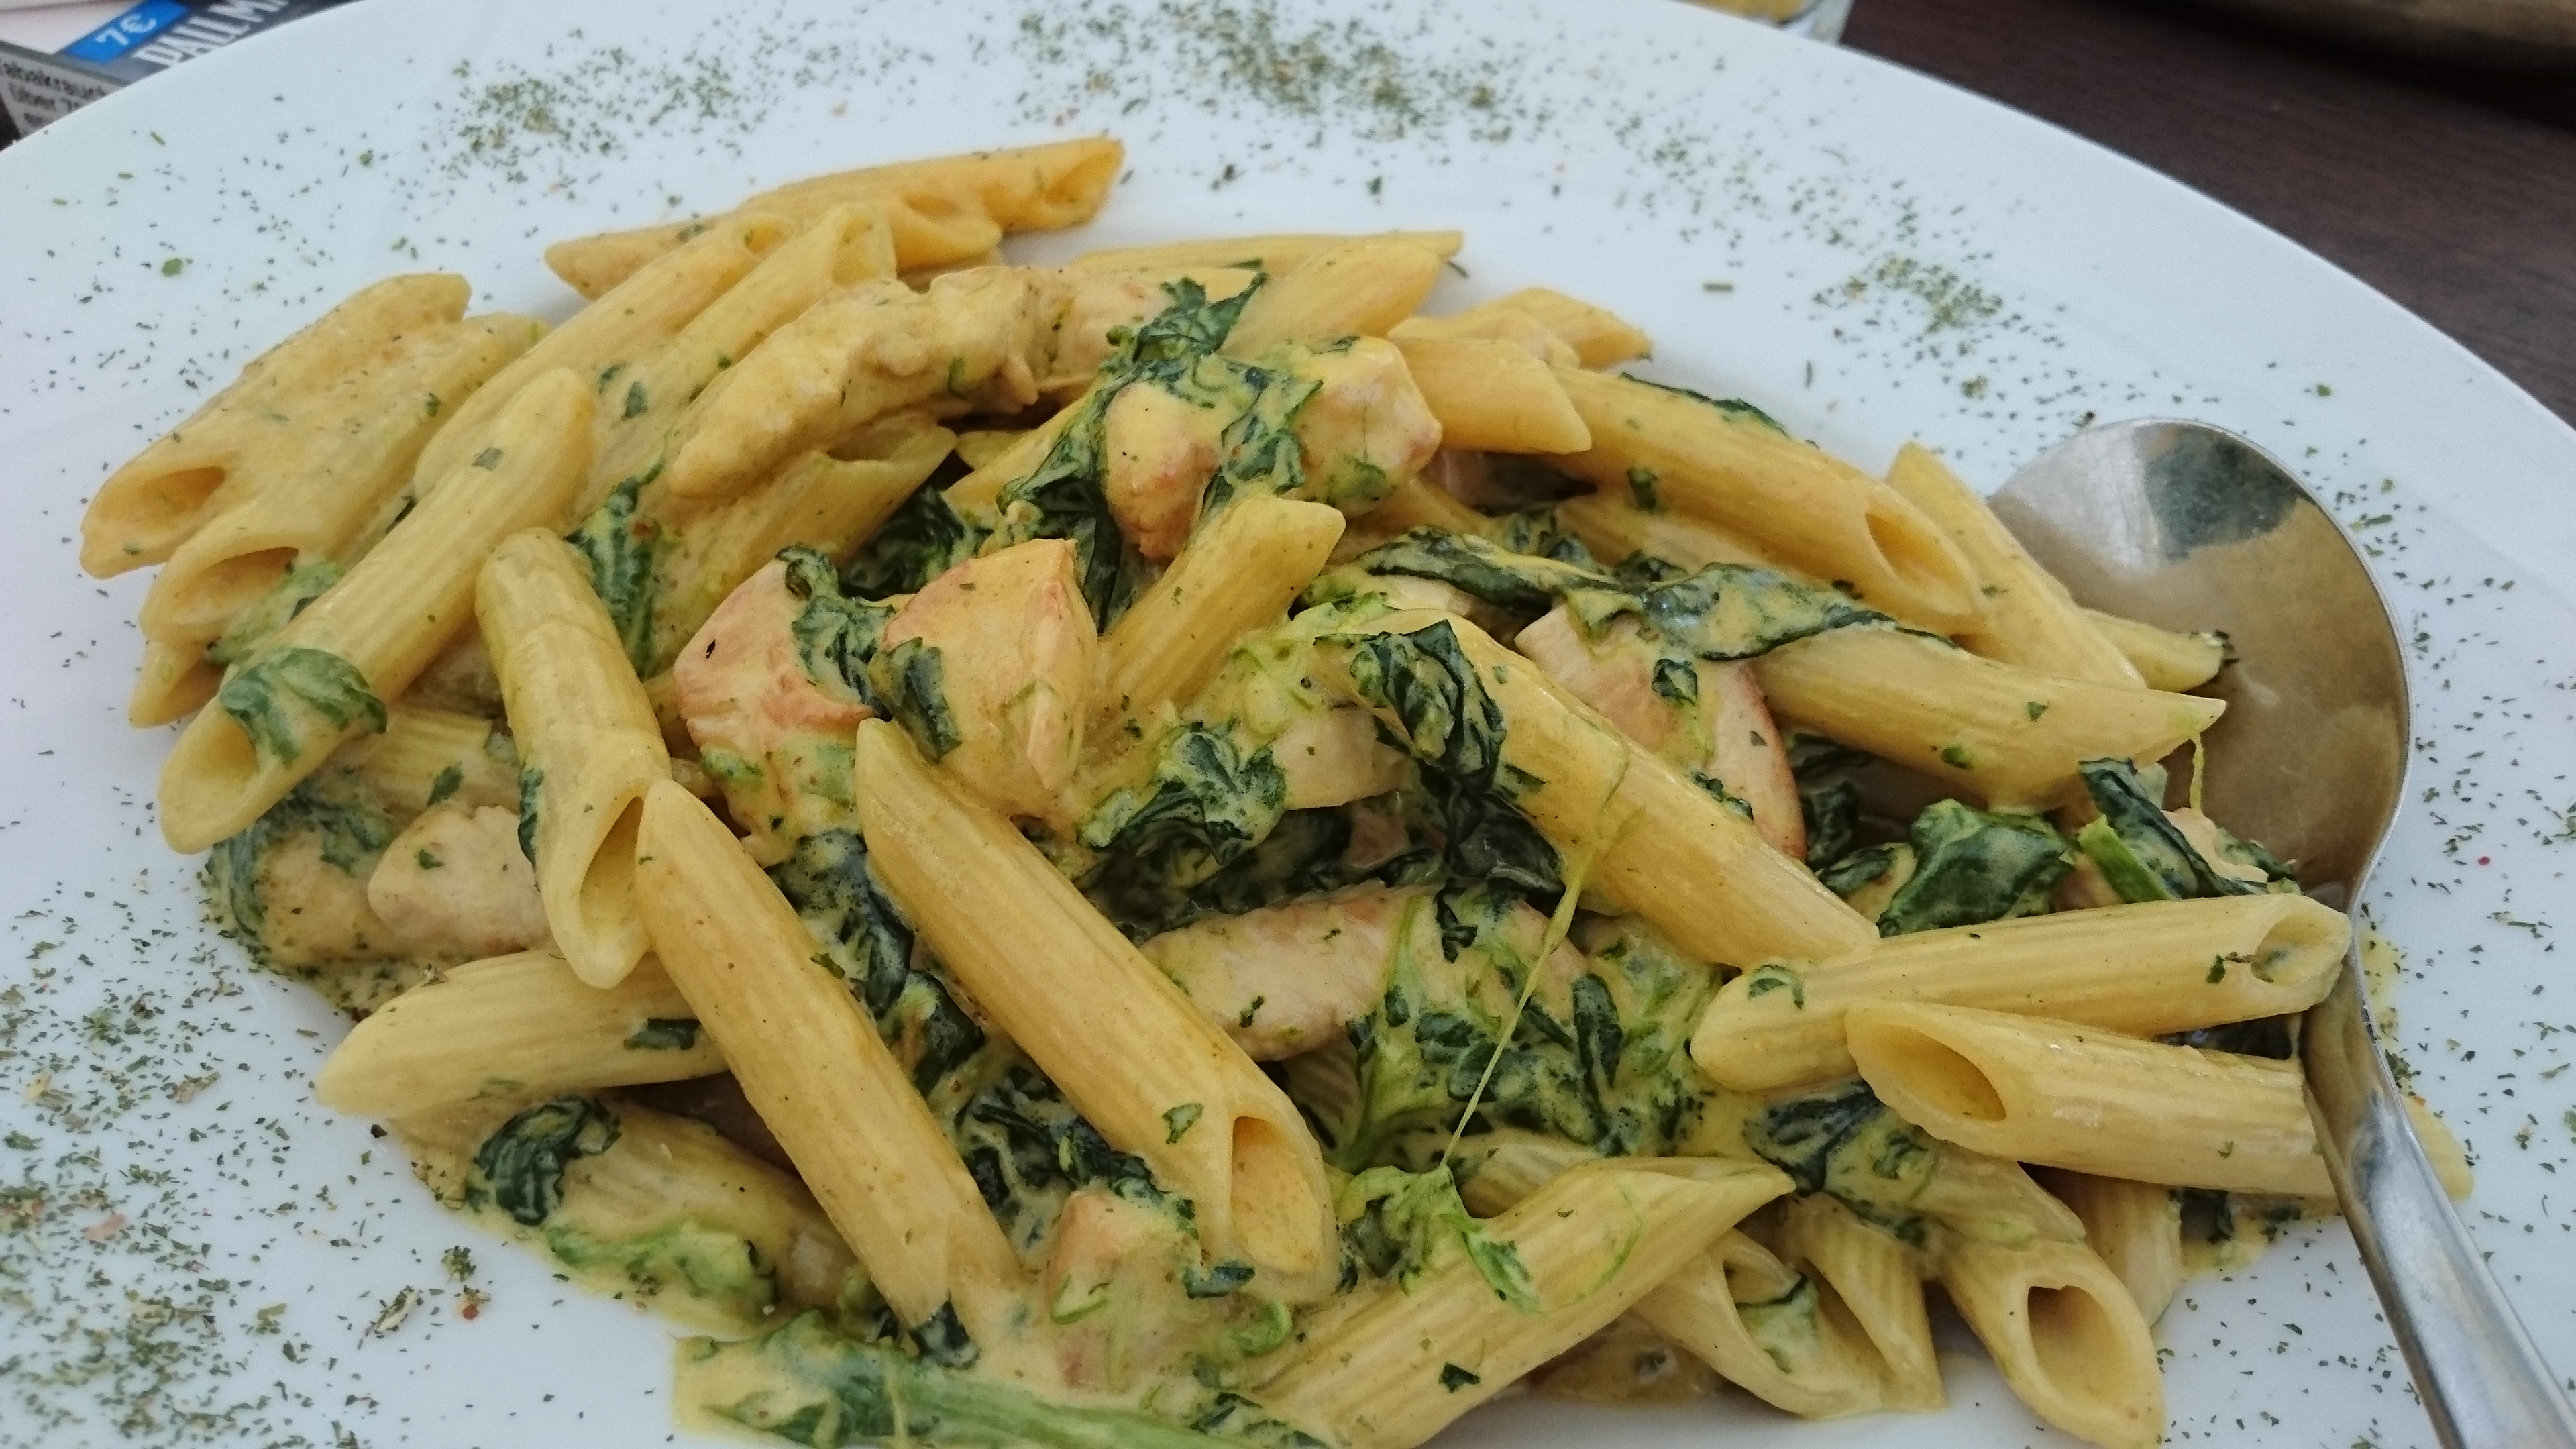 36. Pollo Basilico 11,50
Pasta mit Hähnchenbruststreifen und Champignons in einer Basilikum-Olivenölsauce und Parmesan